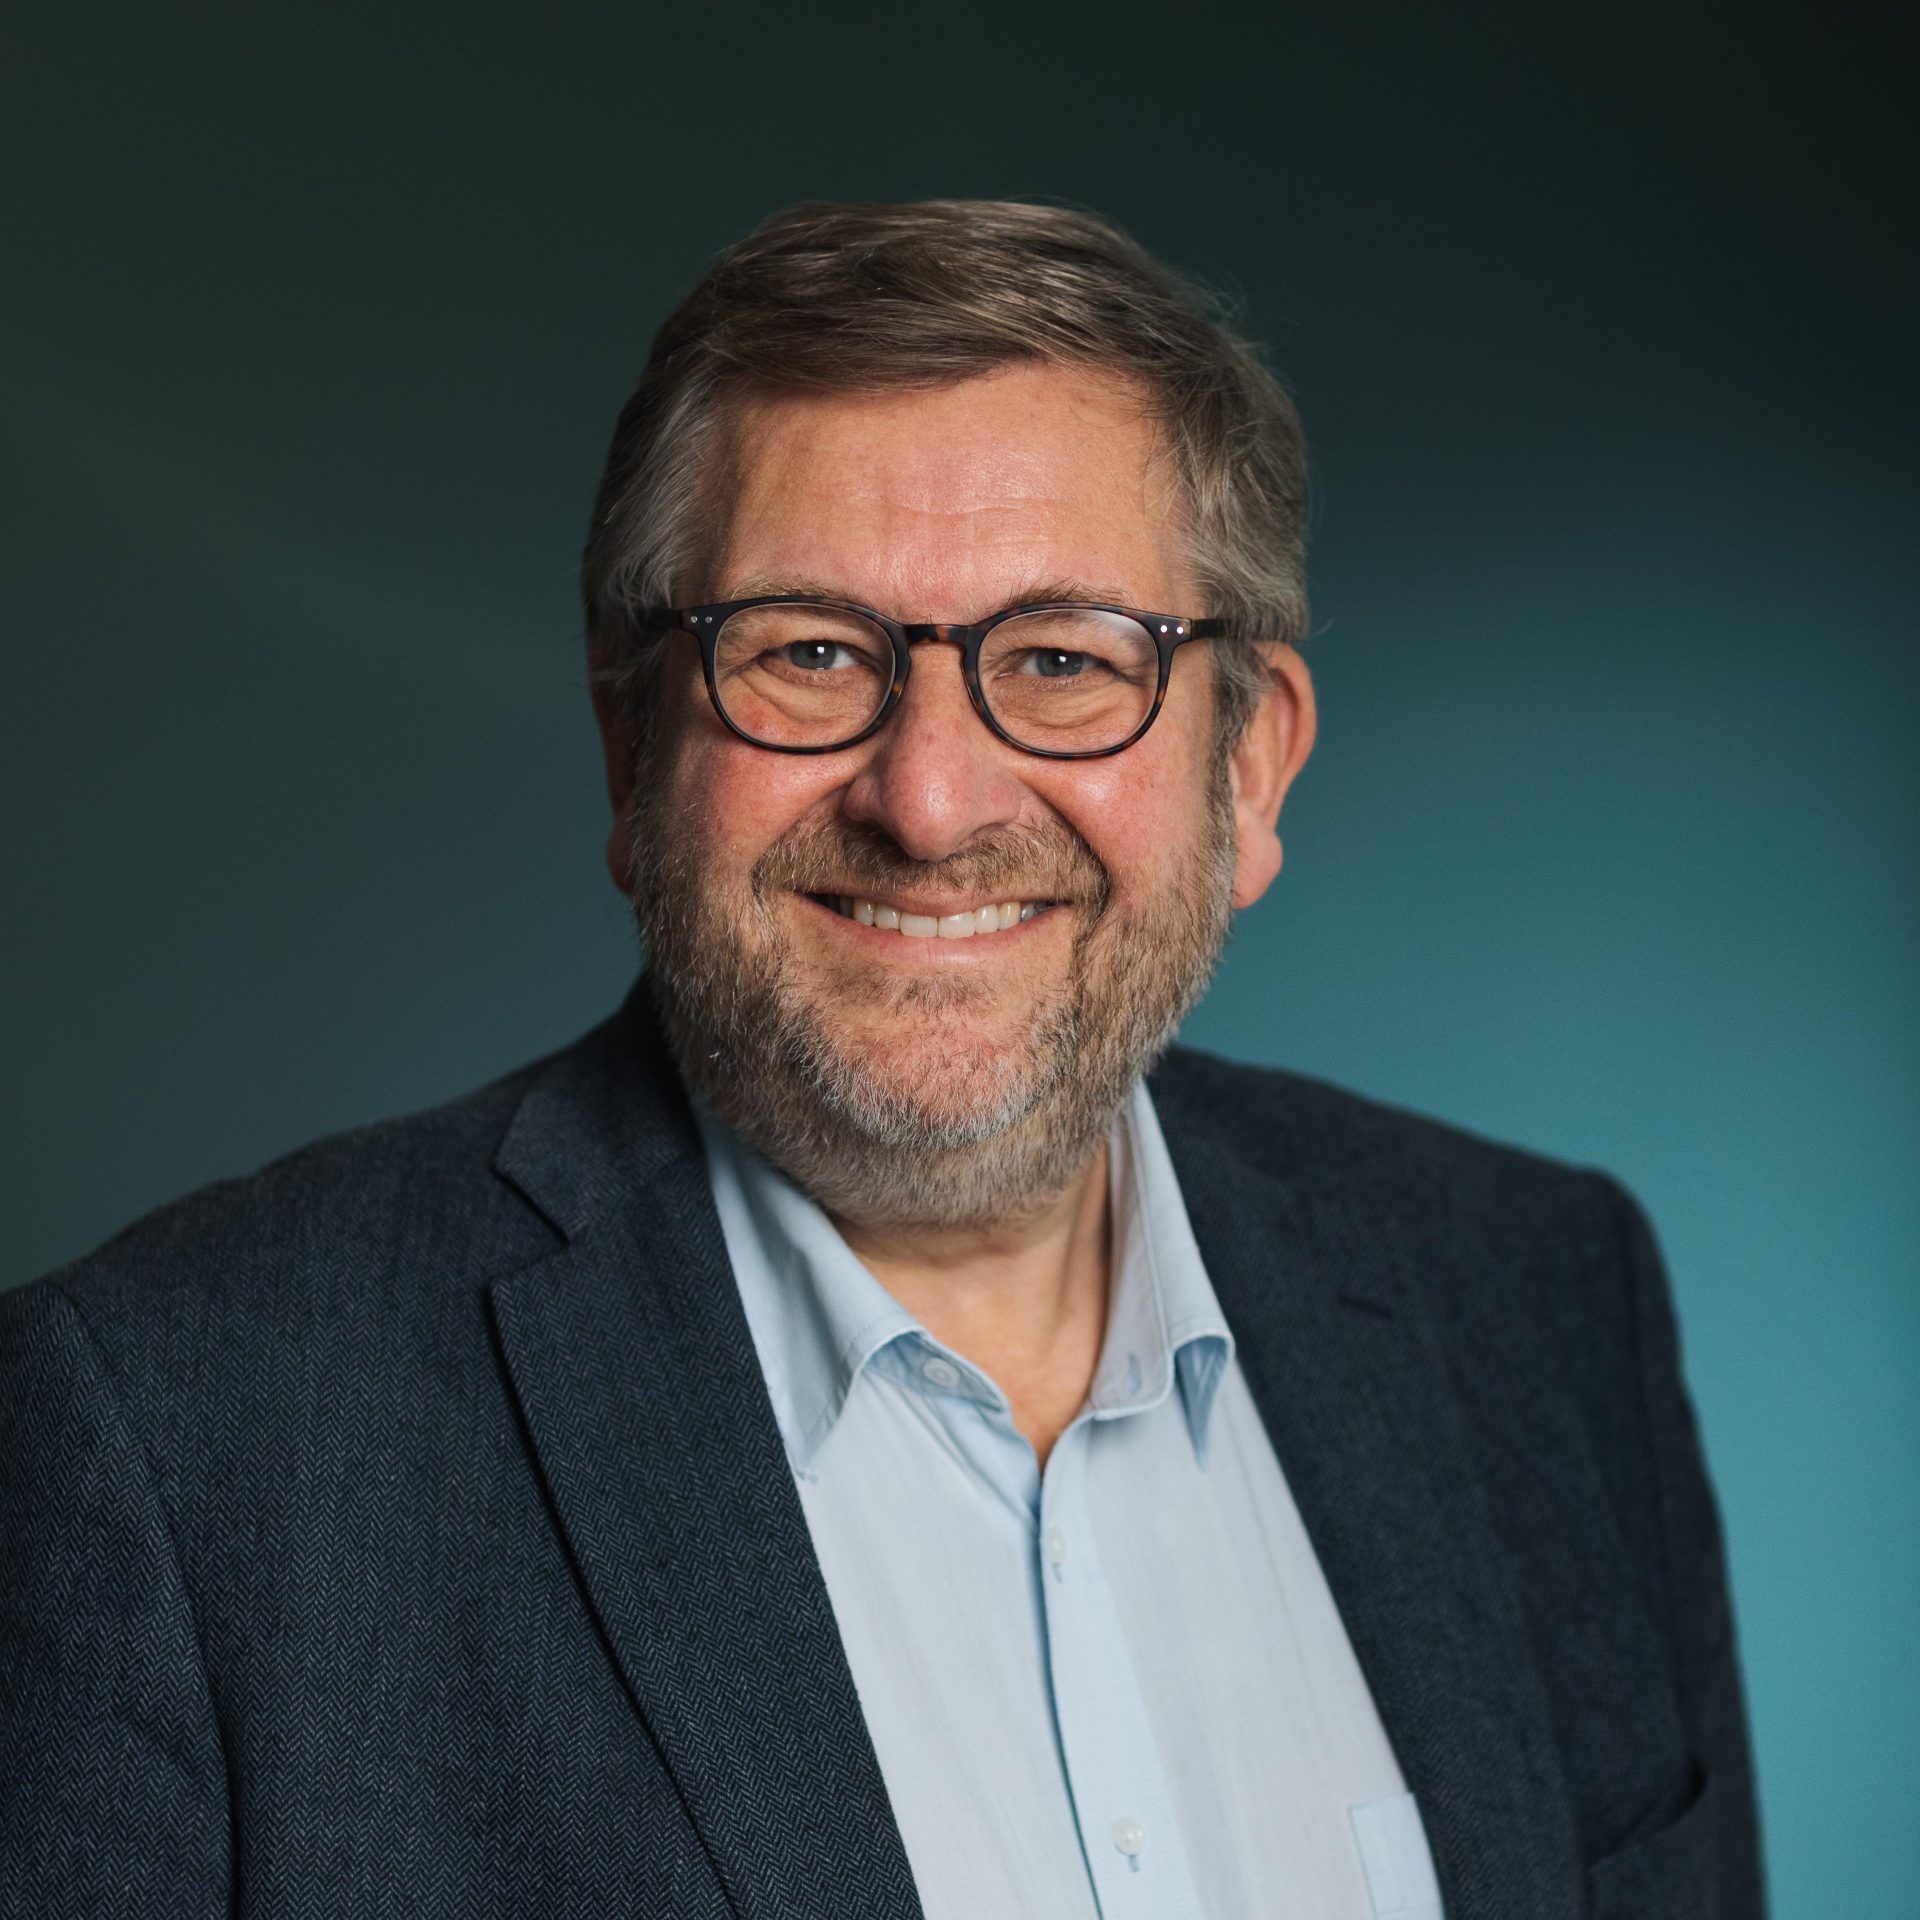 Profesjonelt hodebilde av Ruters administrerende direktør, Bernt Reitan Jenssen, en smilende middelaldrende mann med grått hår og skjegg, iført briller og blå dress over en lyseblå skjorte, mot en blågrønn bakgrunn.